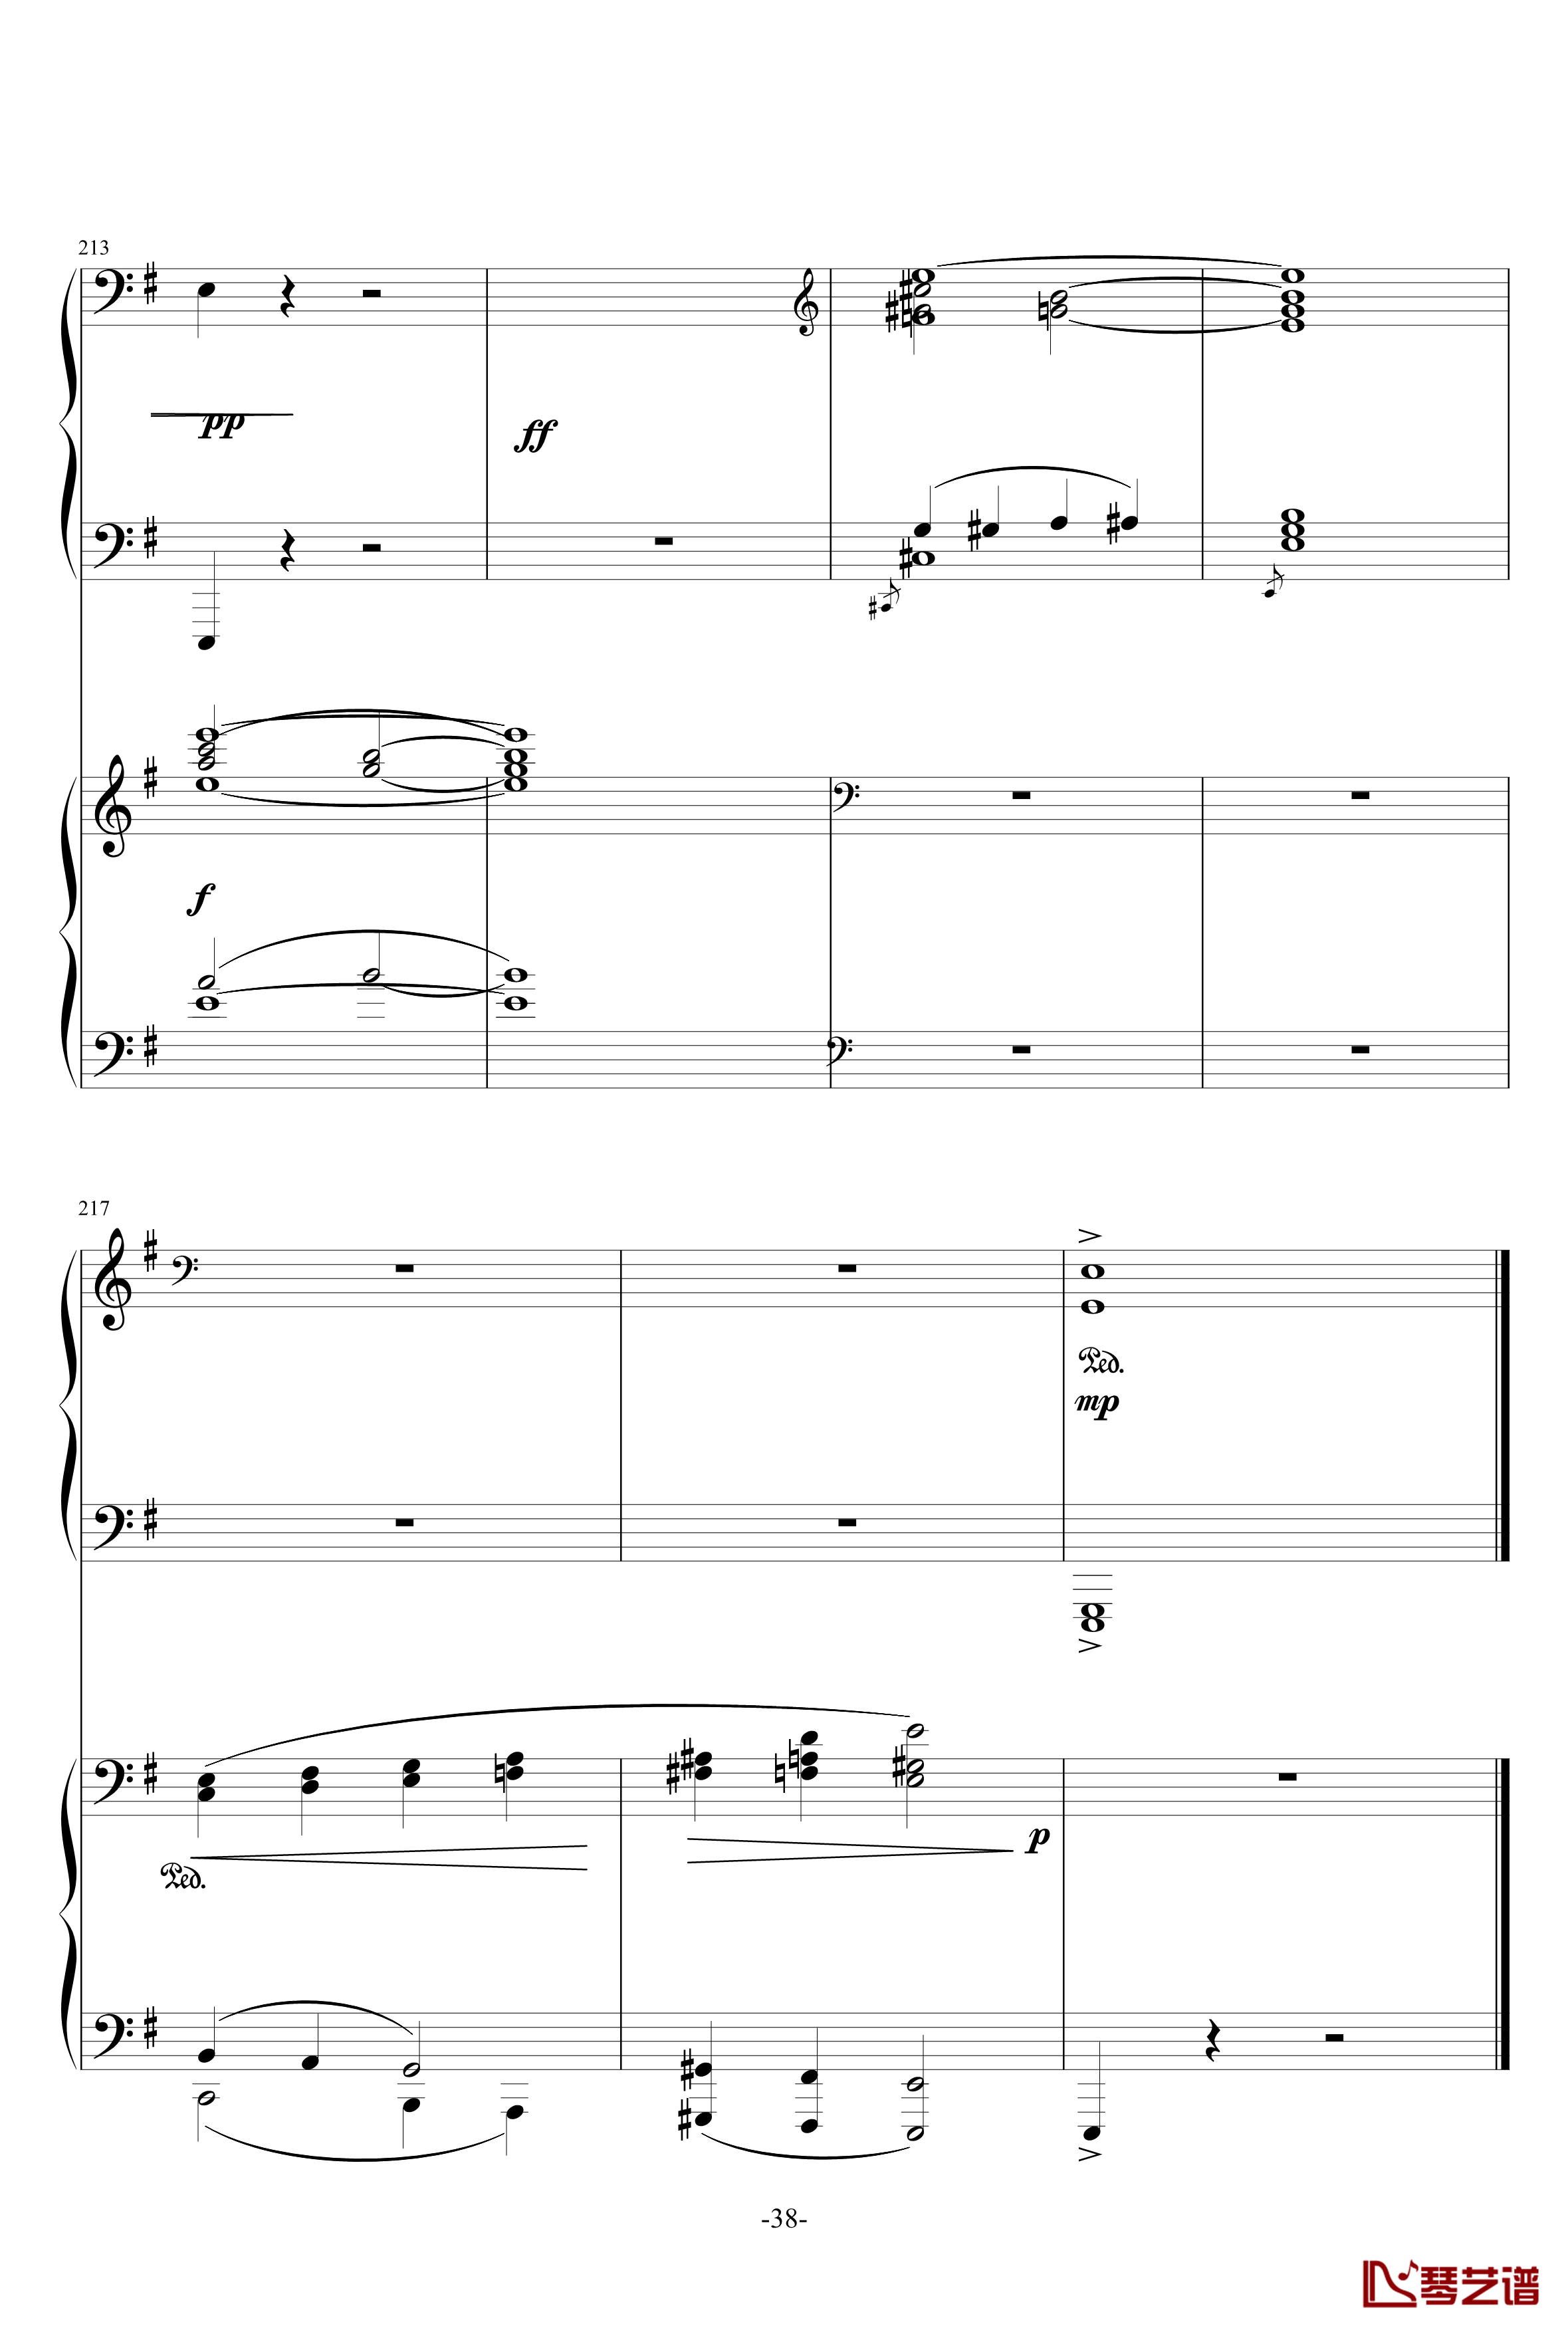 普罗科菲耶夫第三钢琴协奏曲第二乐章钢琴谱38